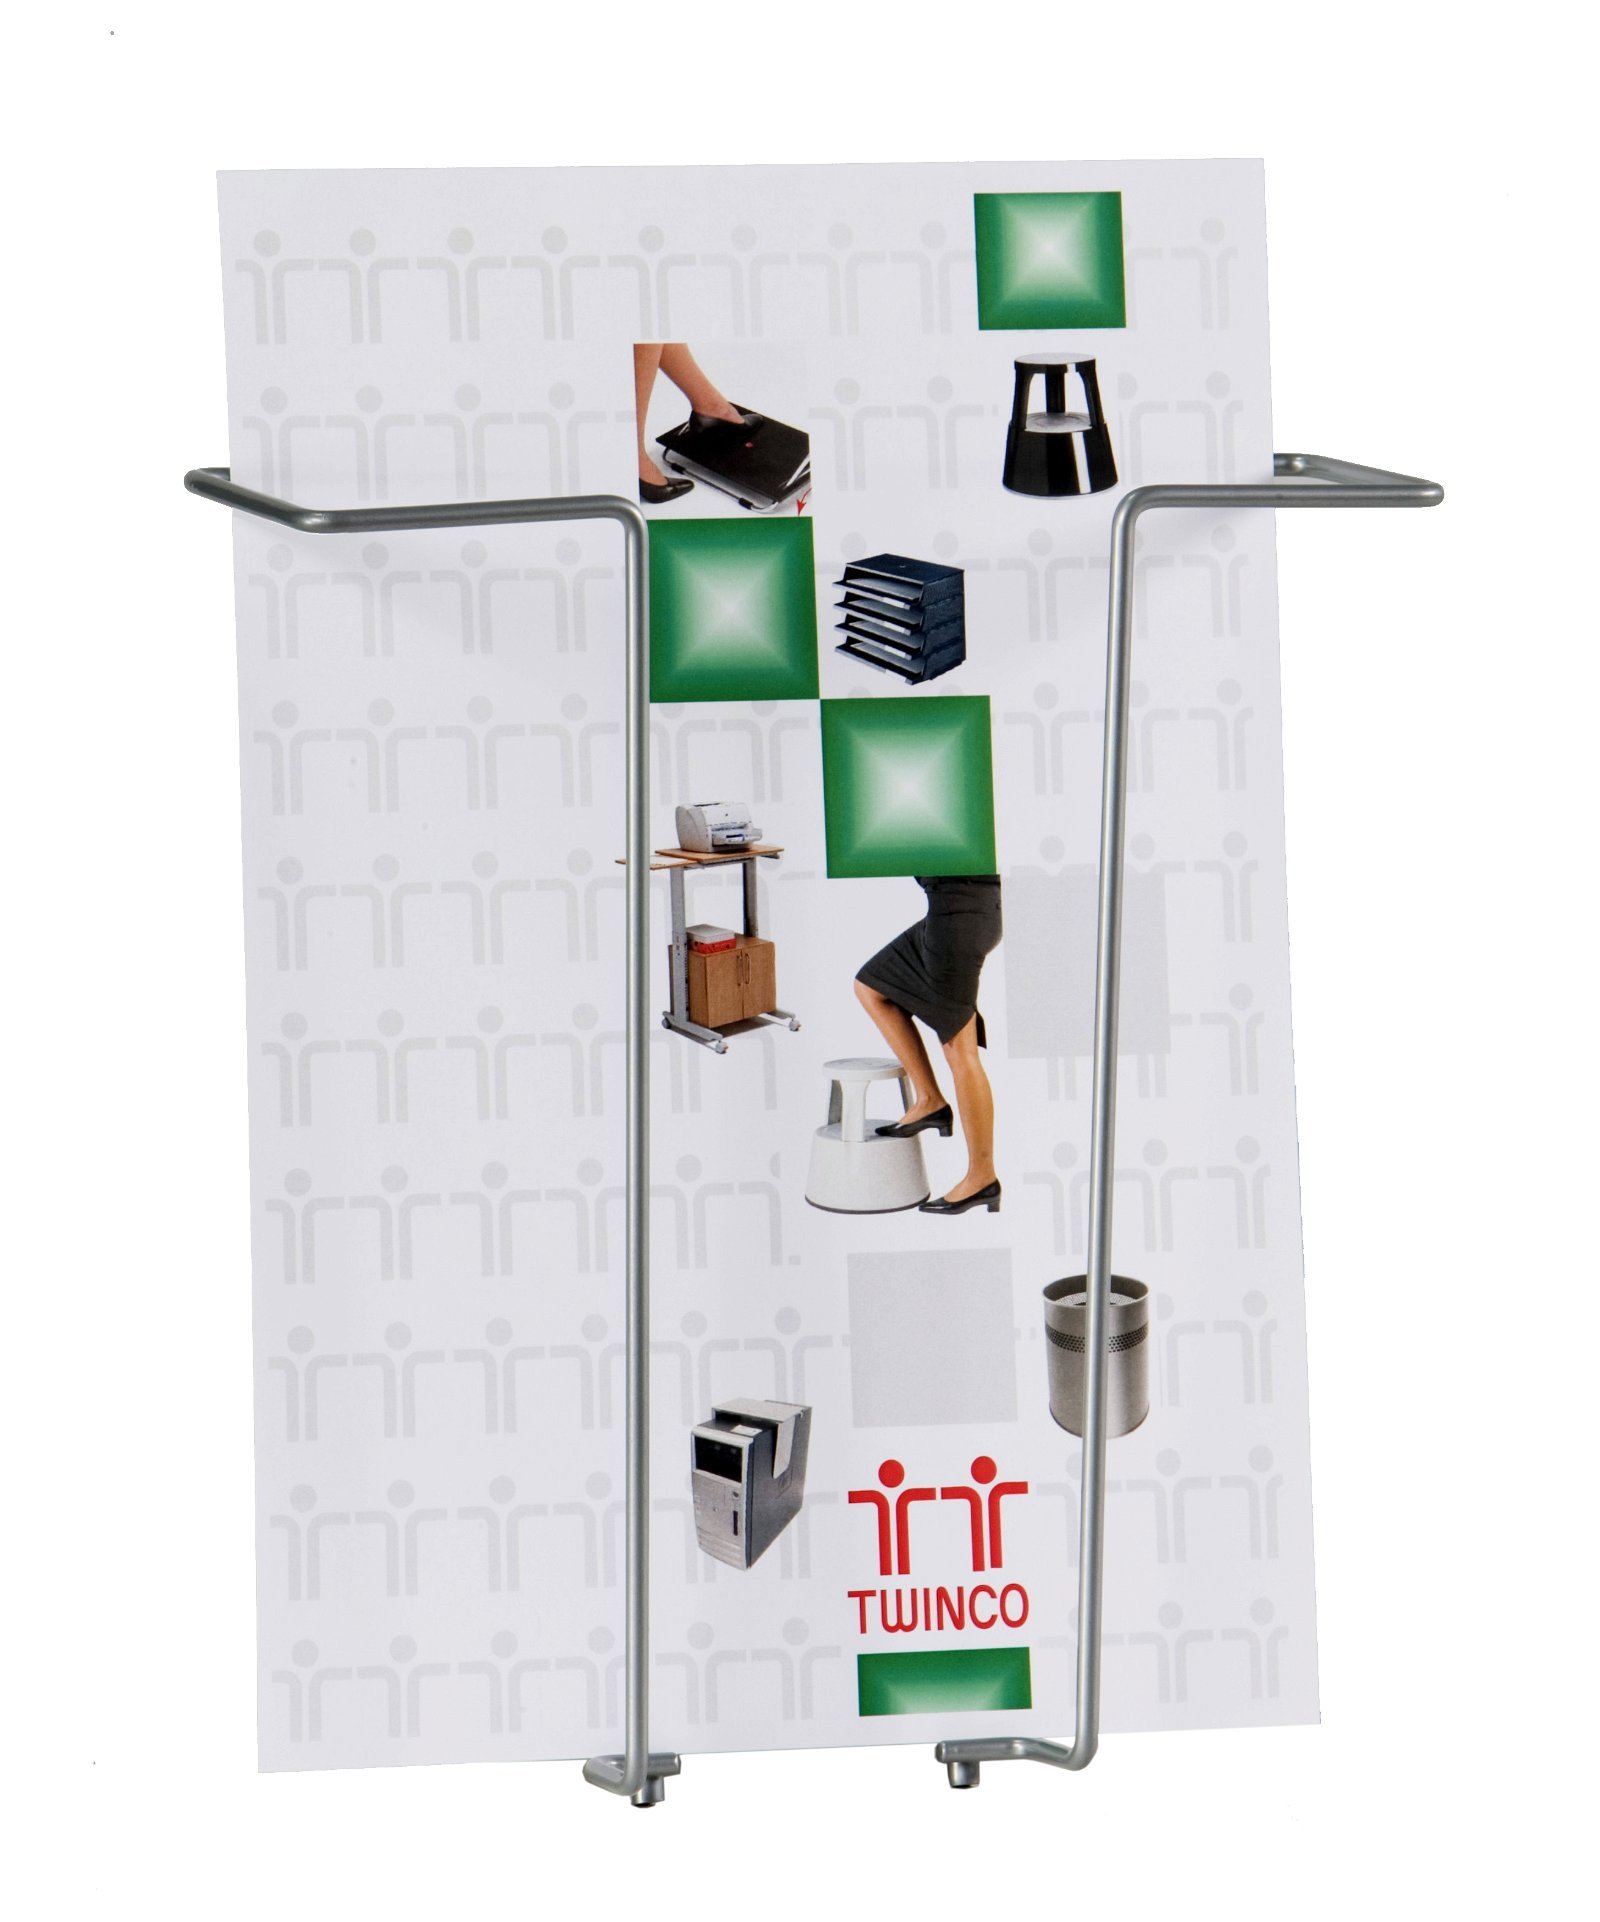 TWINCO Agenda vægbrochureholder med 1 fag i A4-størrelse